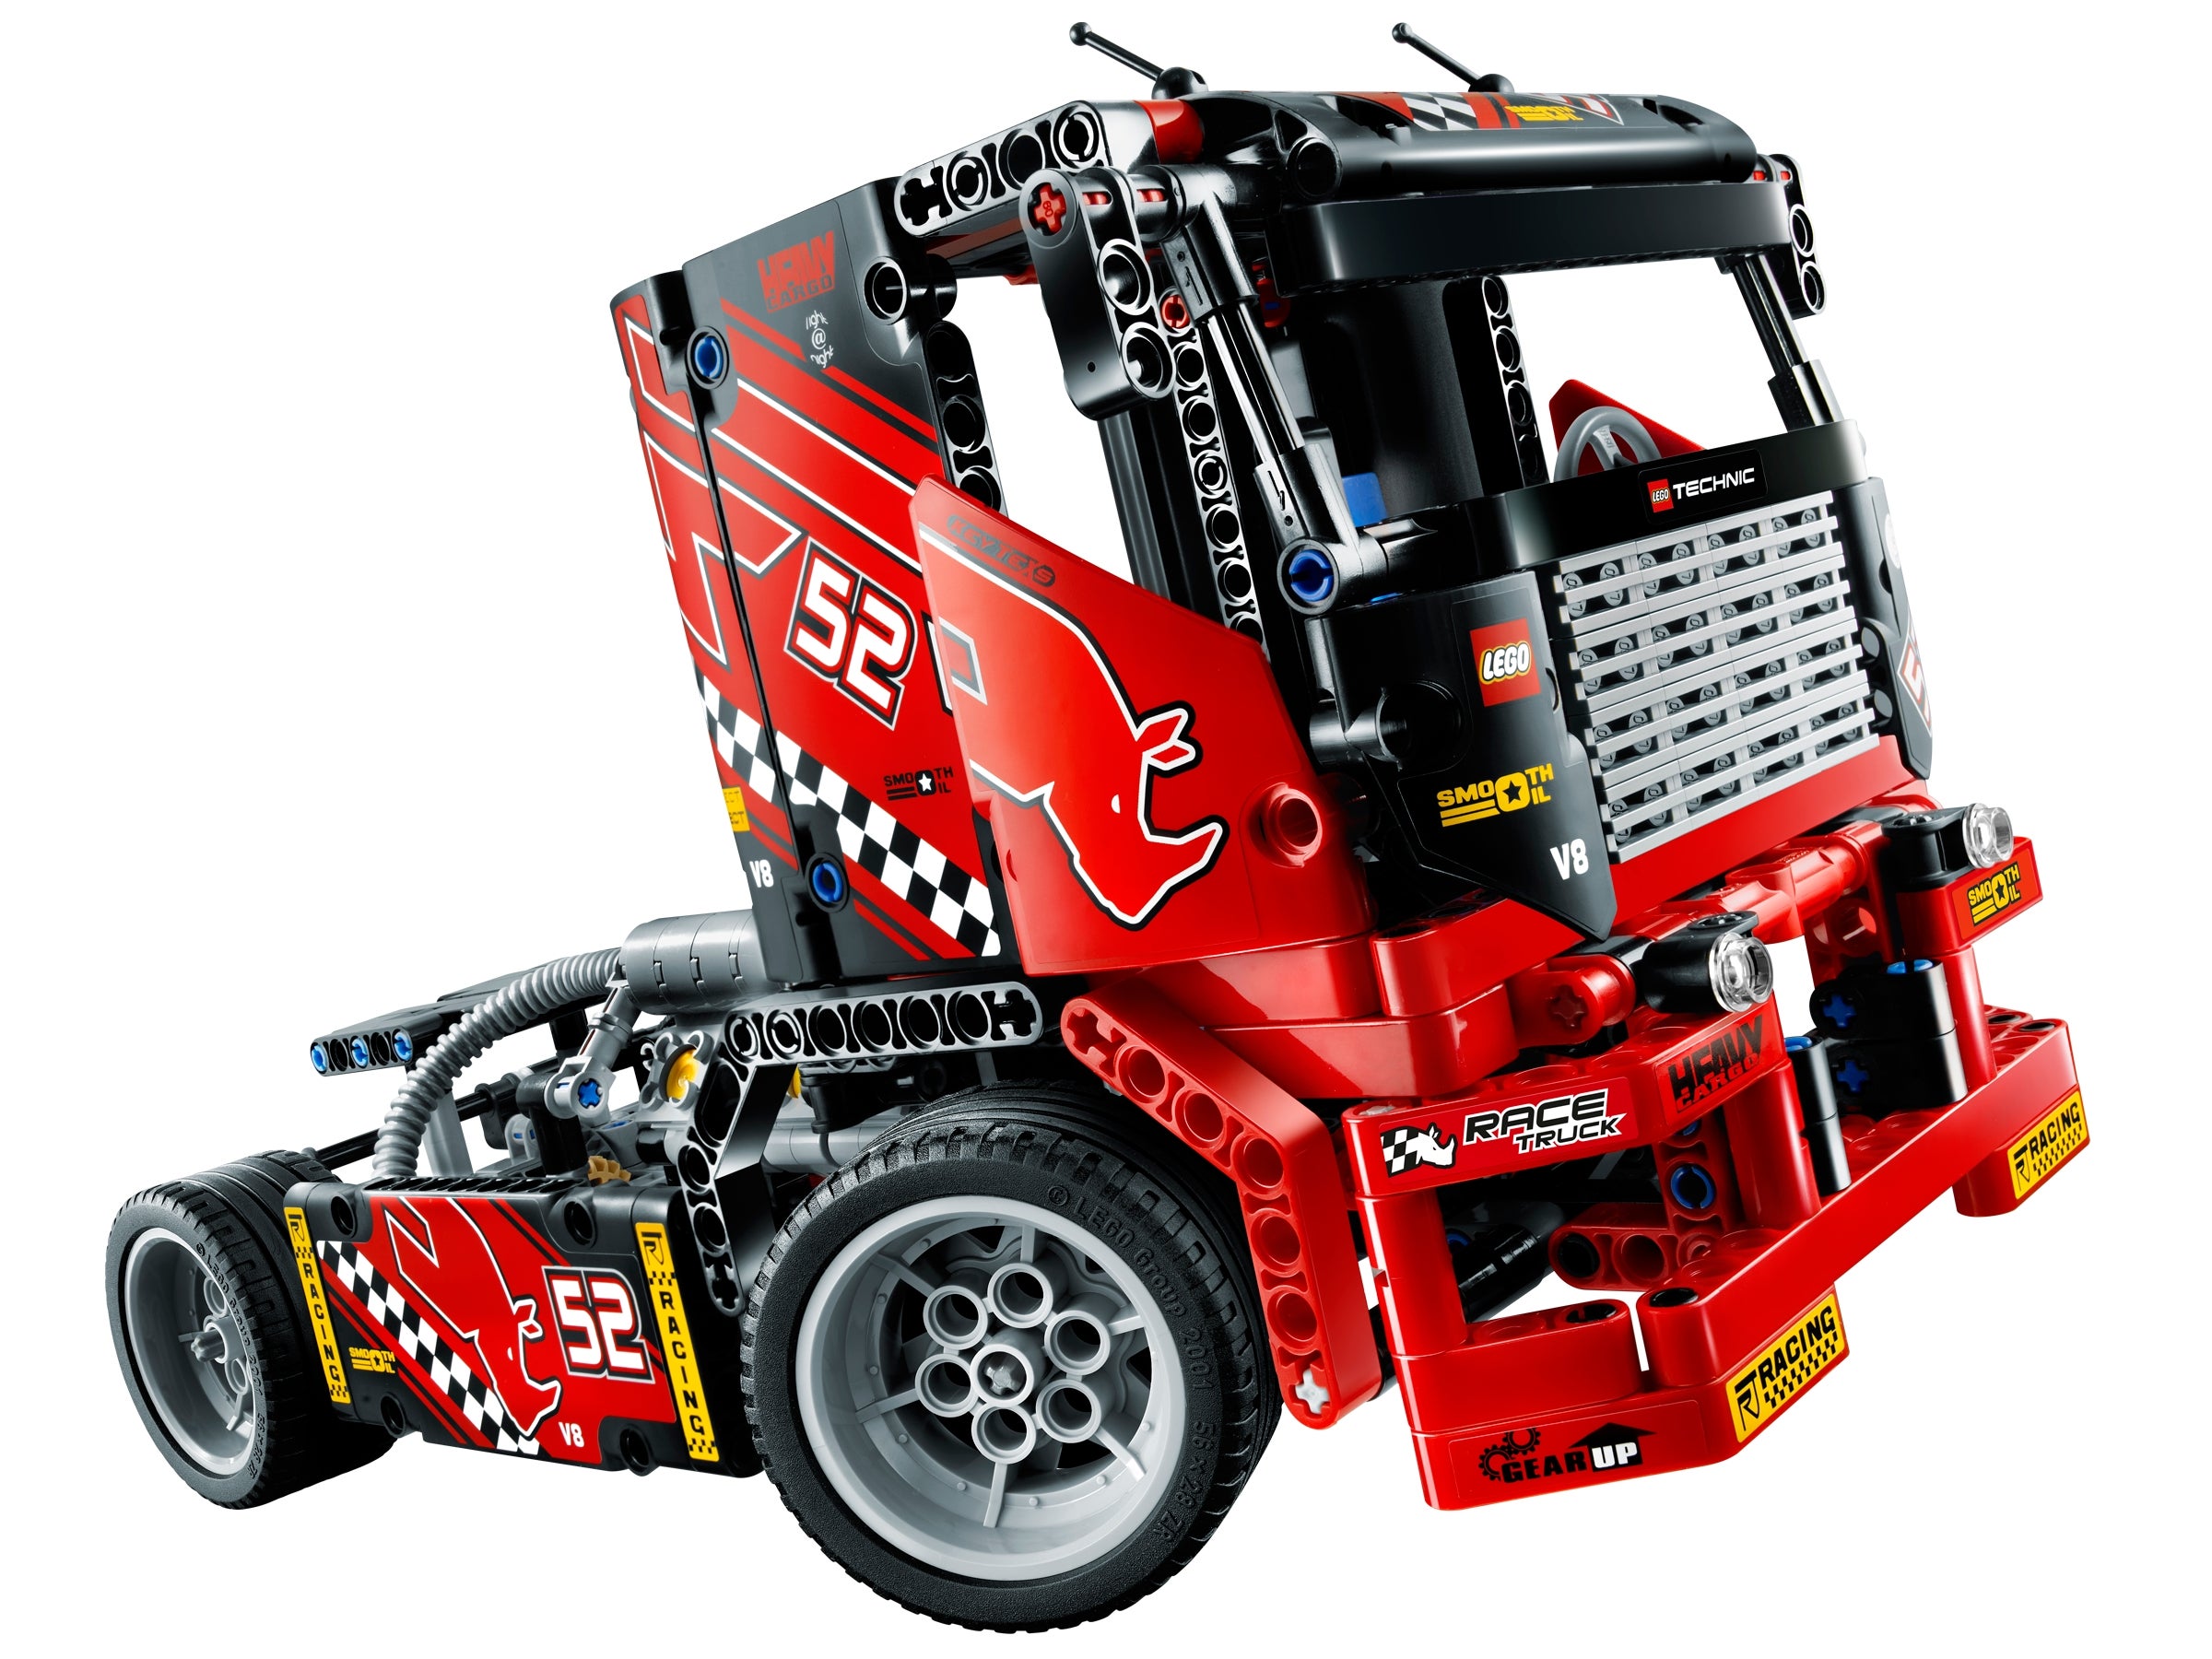 LEGO 42041 technic renn camion voiture de course 2in1 modèle race le camion de course OVP